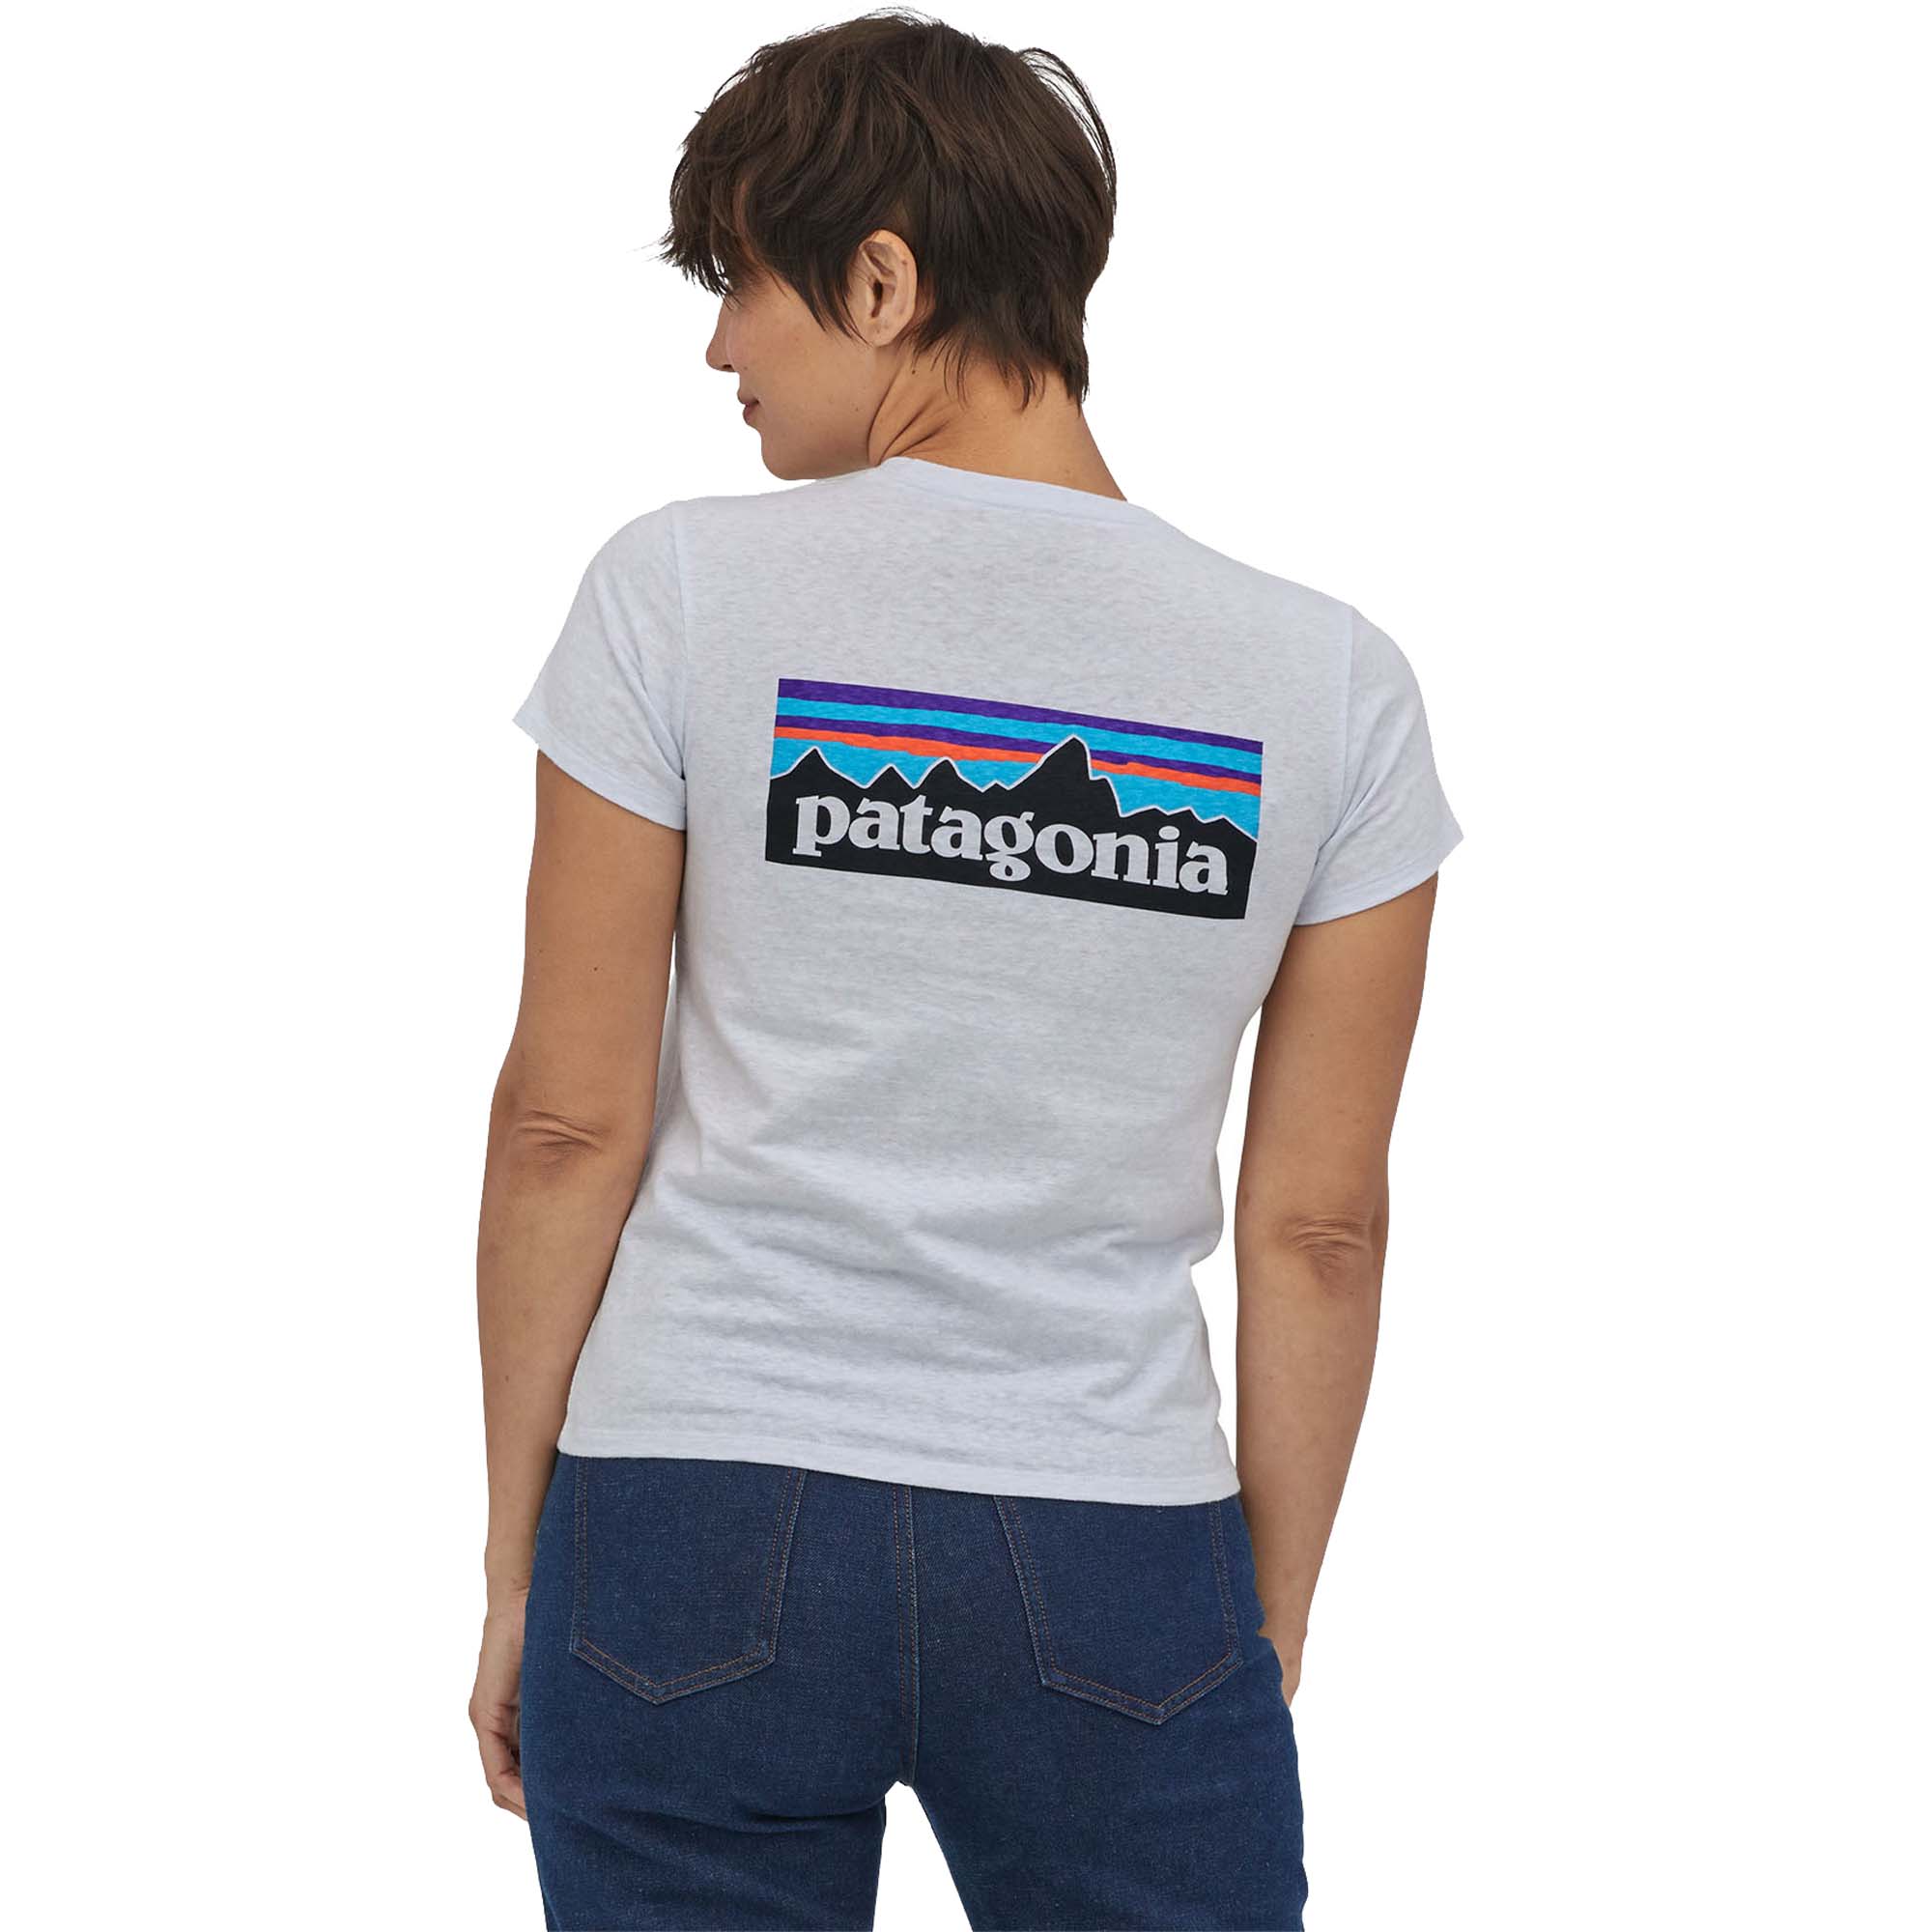 Photos - Trekking Clothes Patagonia P-6 Logo Responsibili-Tee Women's T-Shirt UK 14 White 37567-WHI 